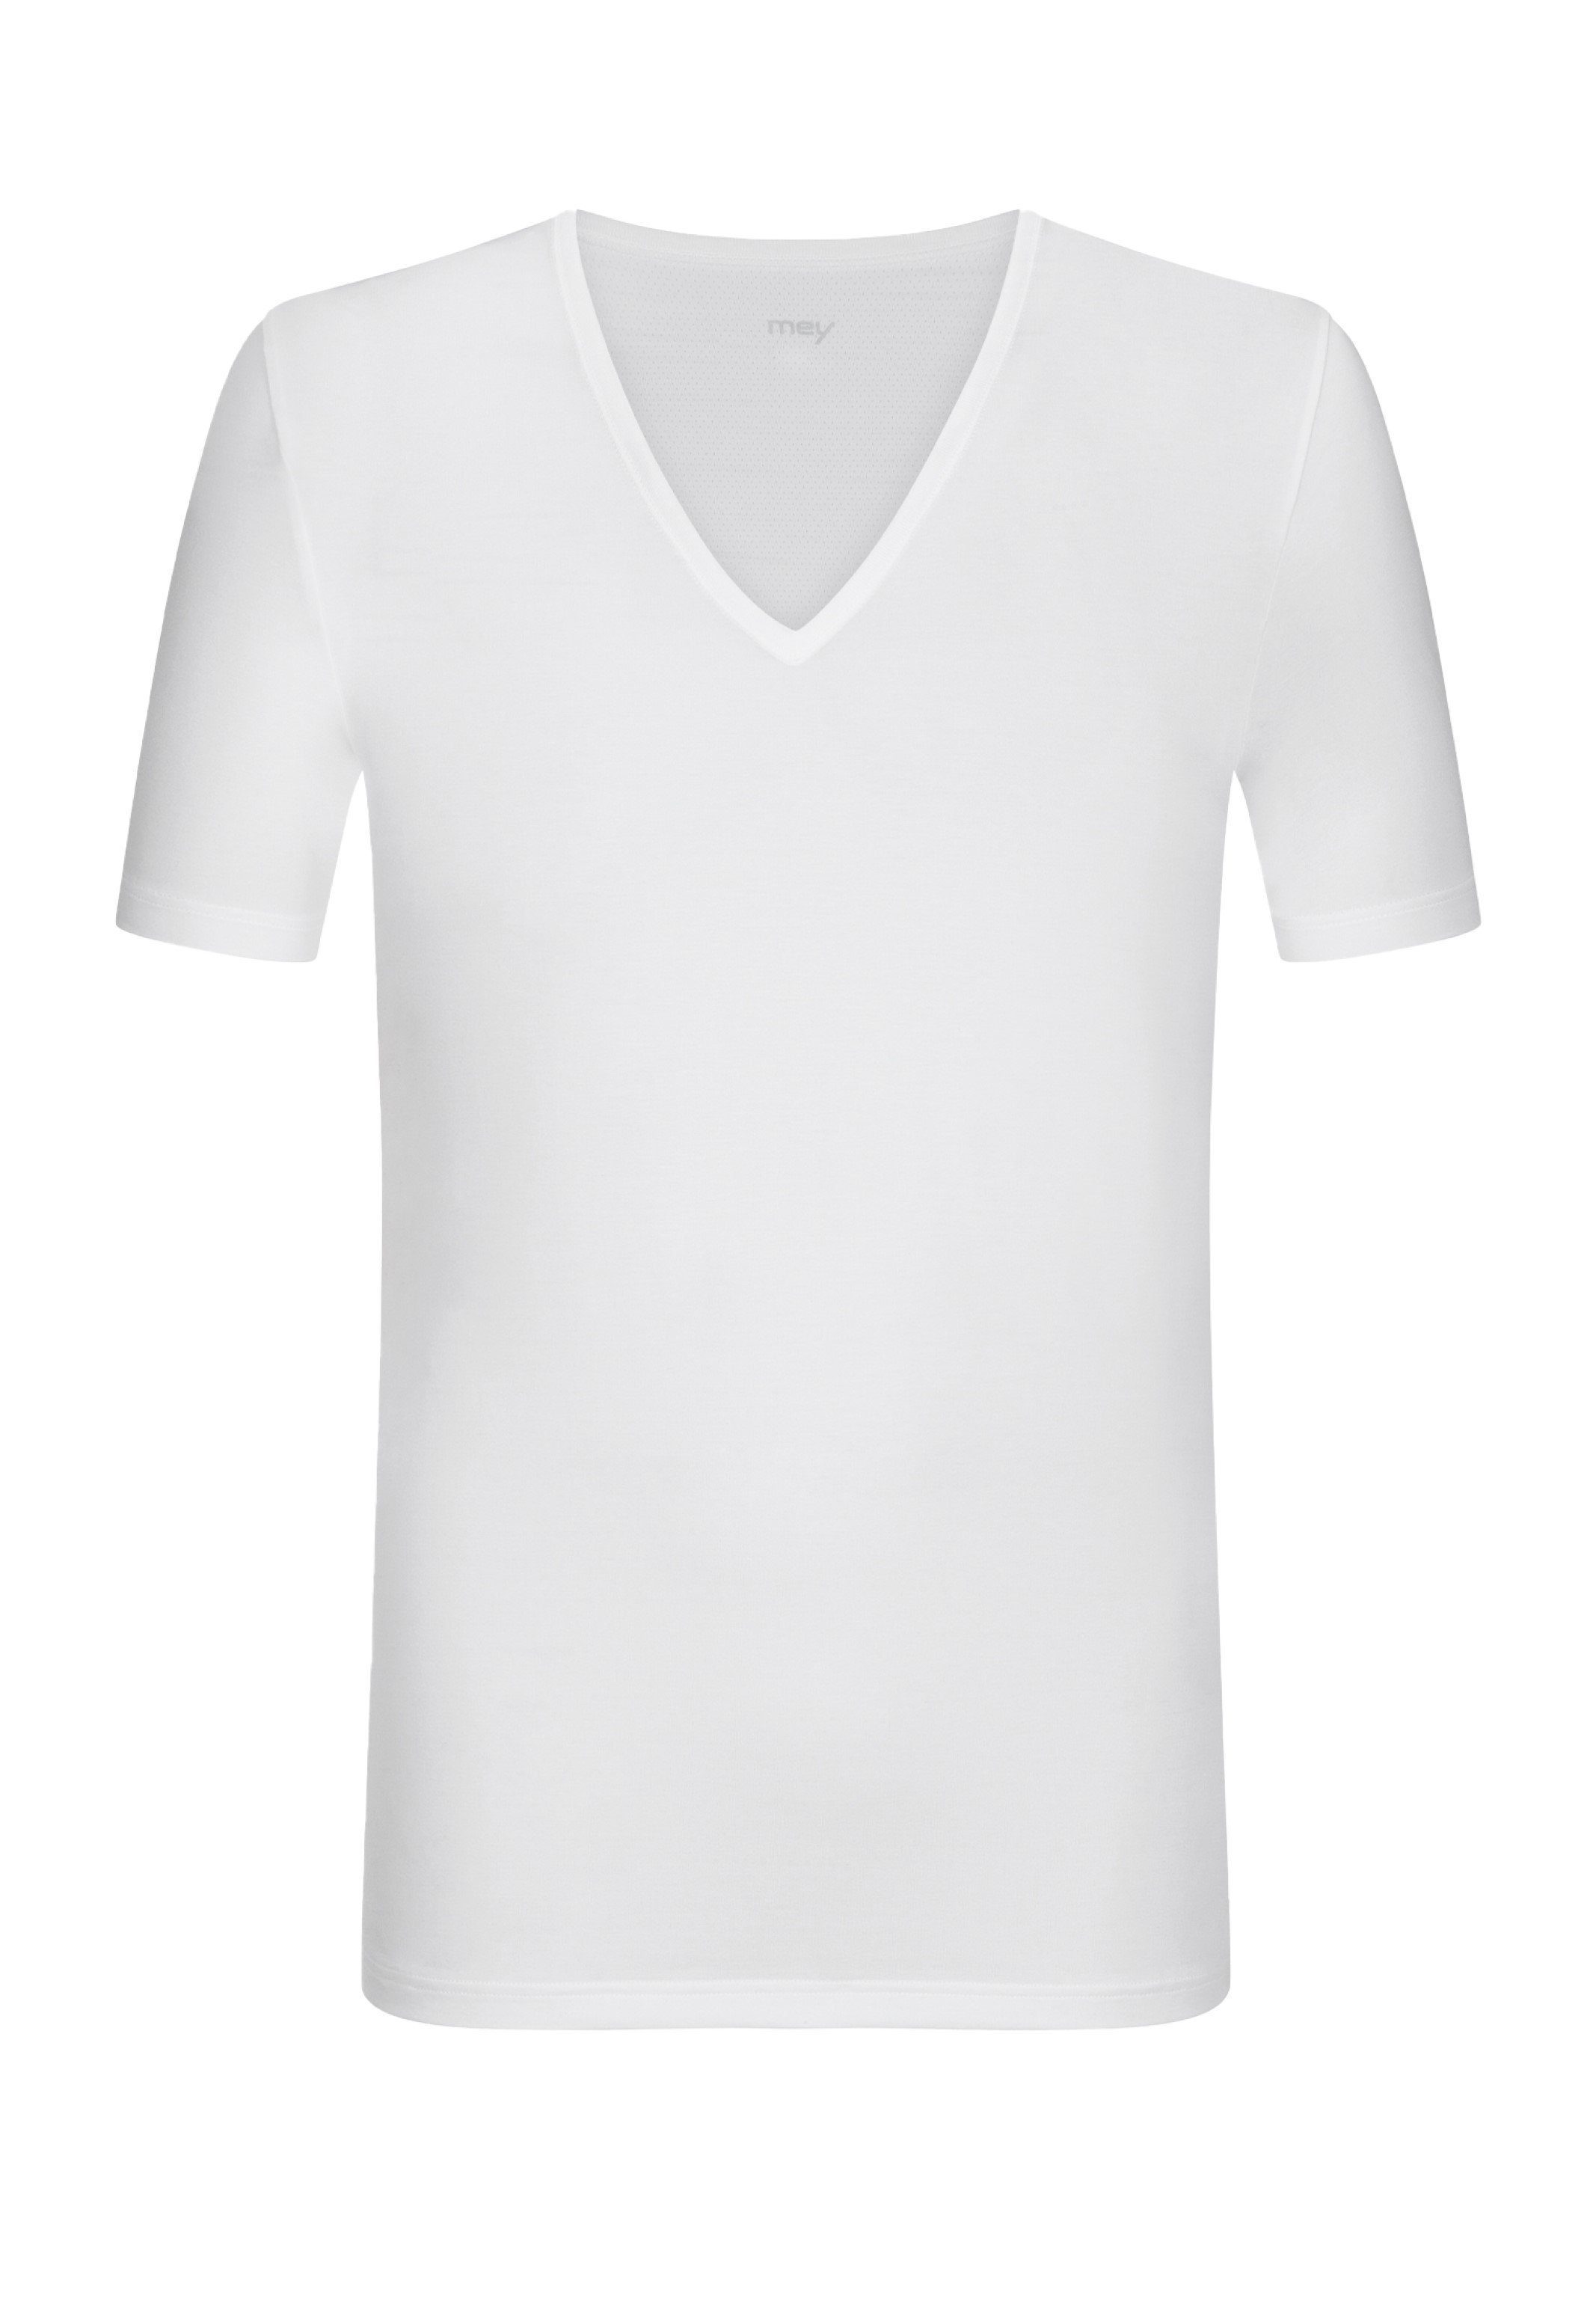 Shirt Dry Unterhemd Weiß - Thermoregulierend - Unterhemd (1-St) Baumwolle Kurzarm / Mey Cotton